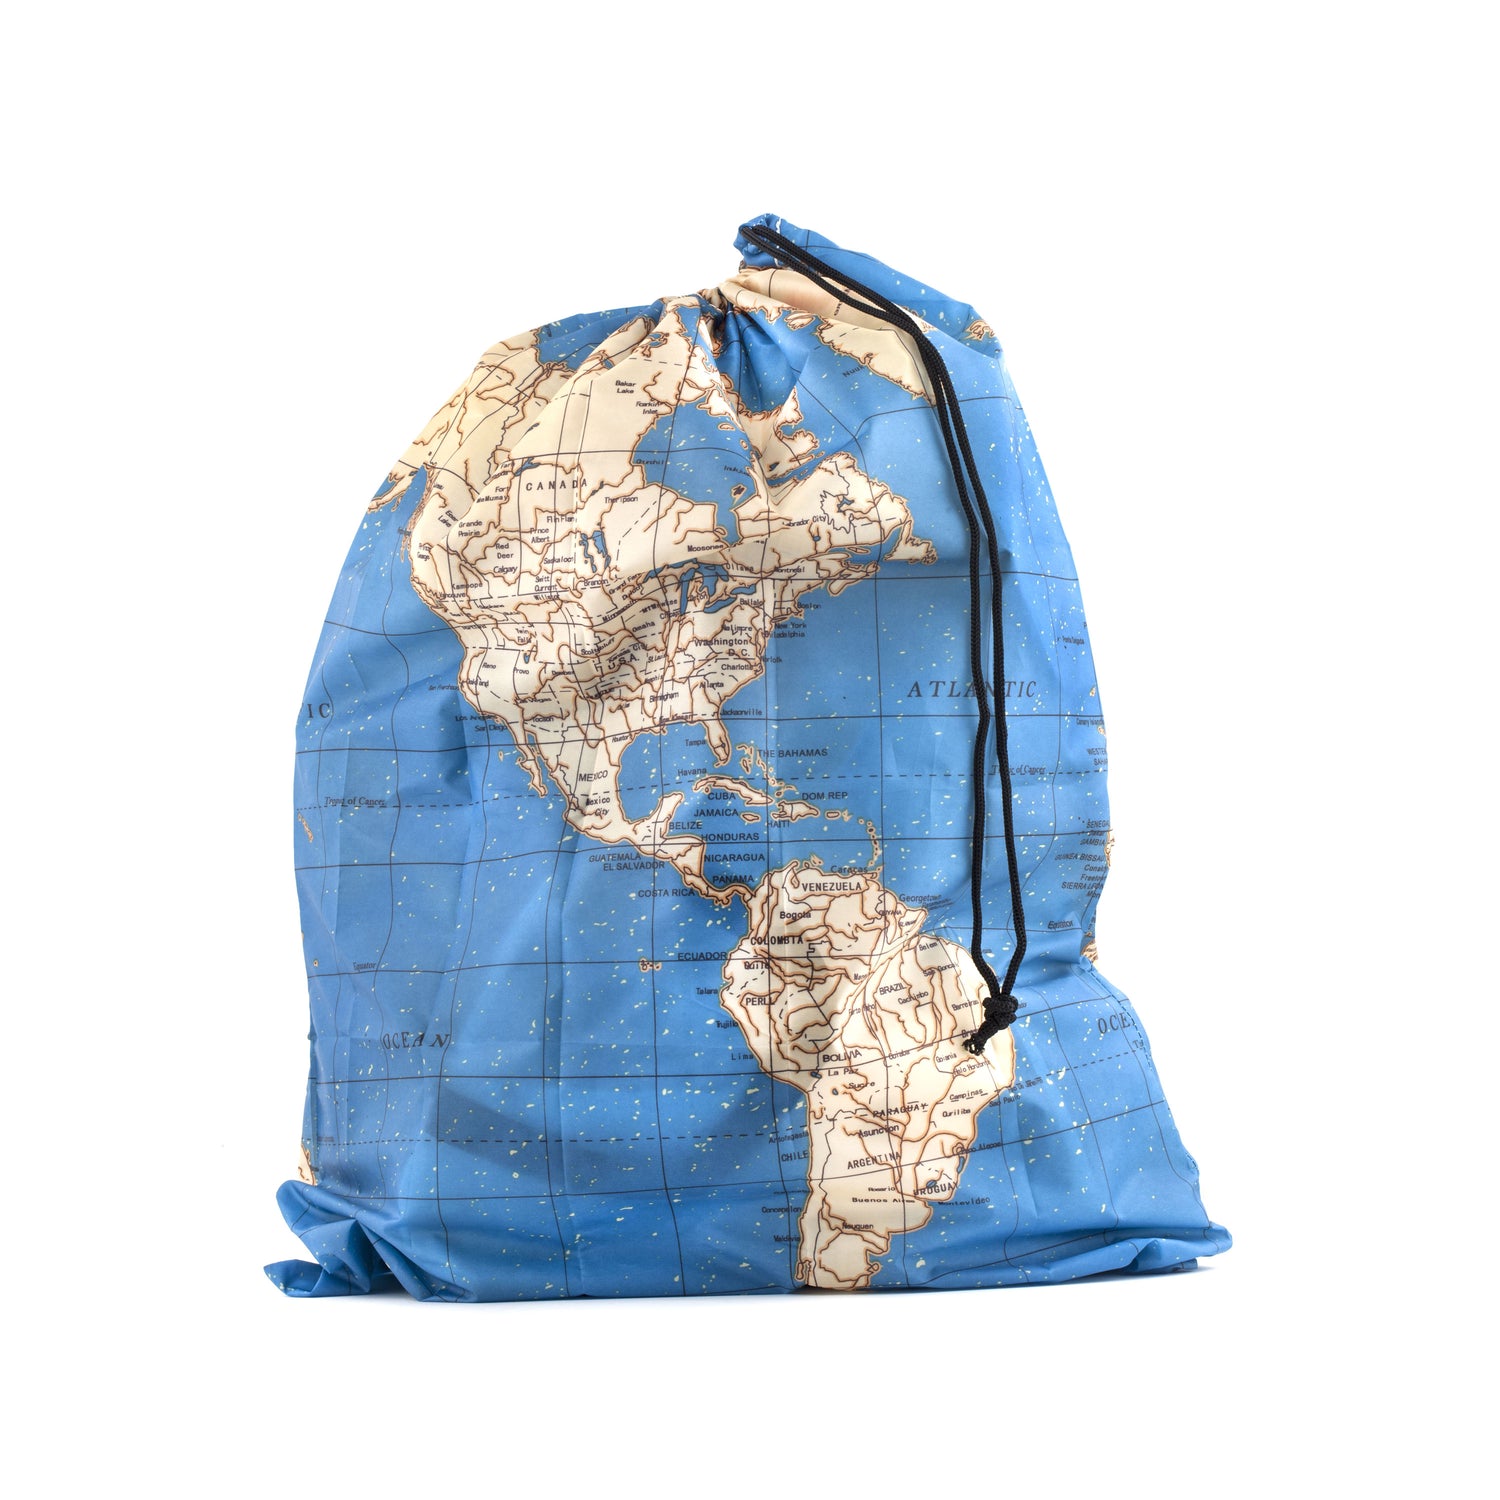 Maps Travel lavandería bag